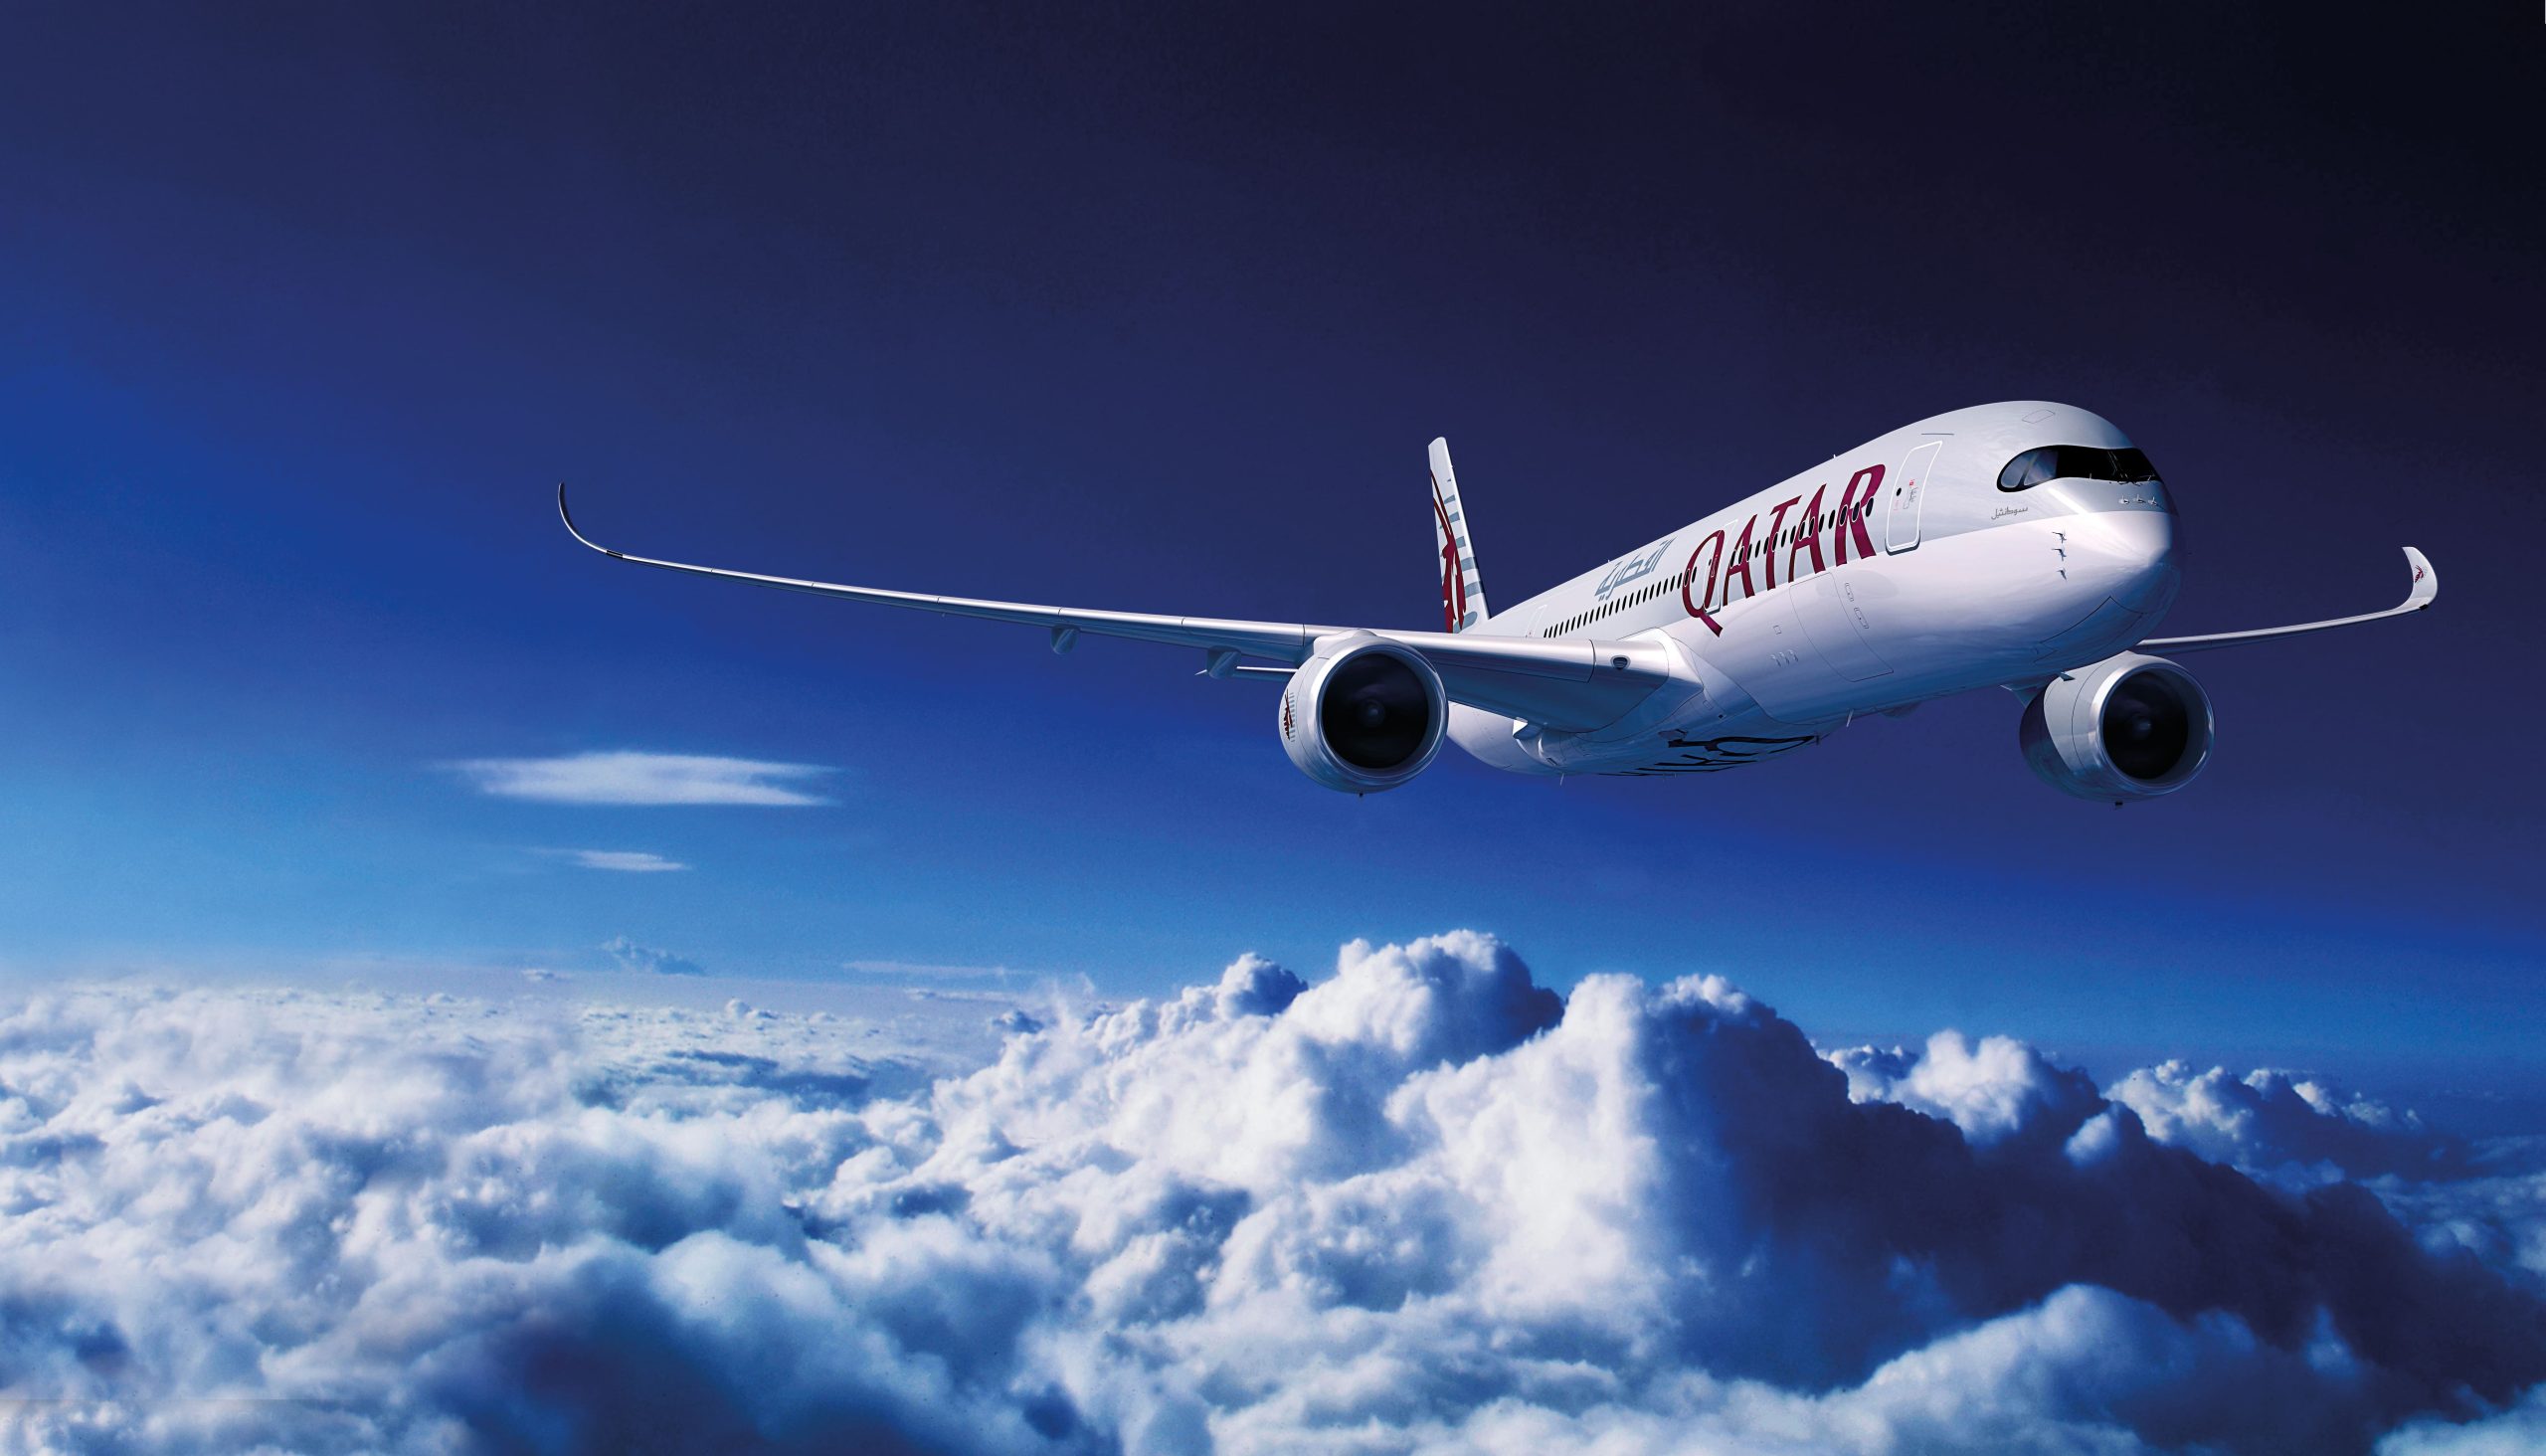 Qatar Airways assina acordo com a Shell para fornecimento de combustível sustentável para aviação